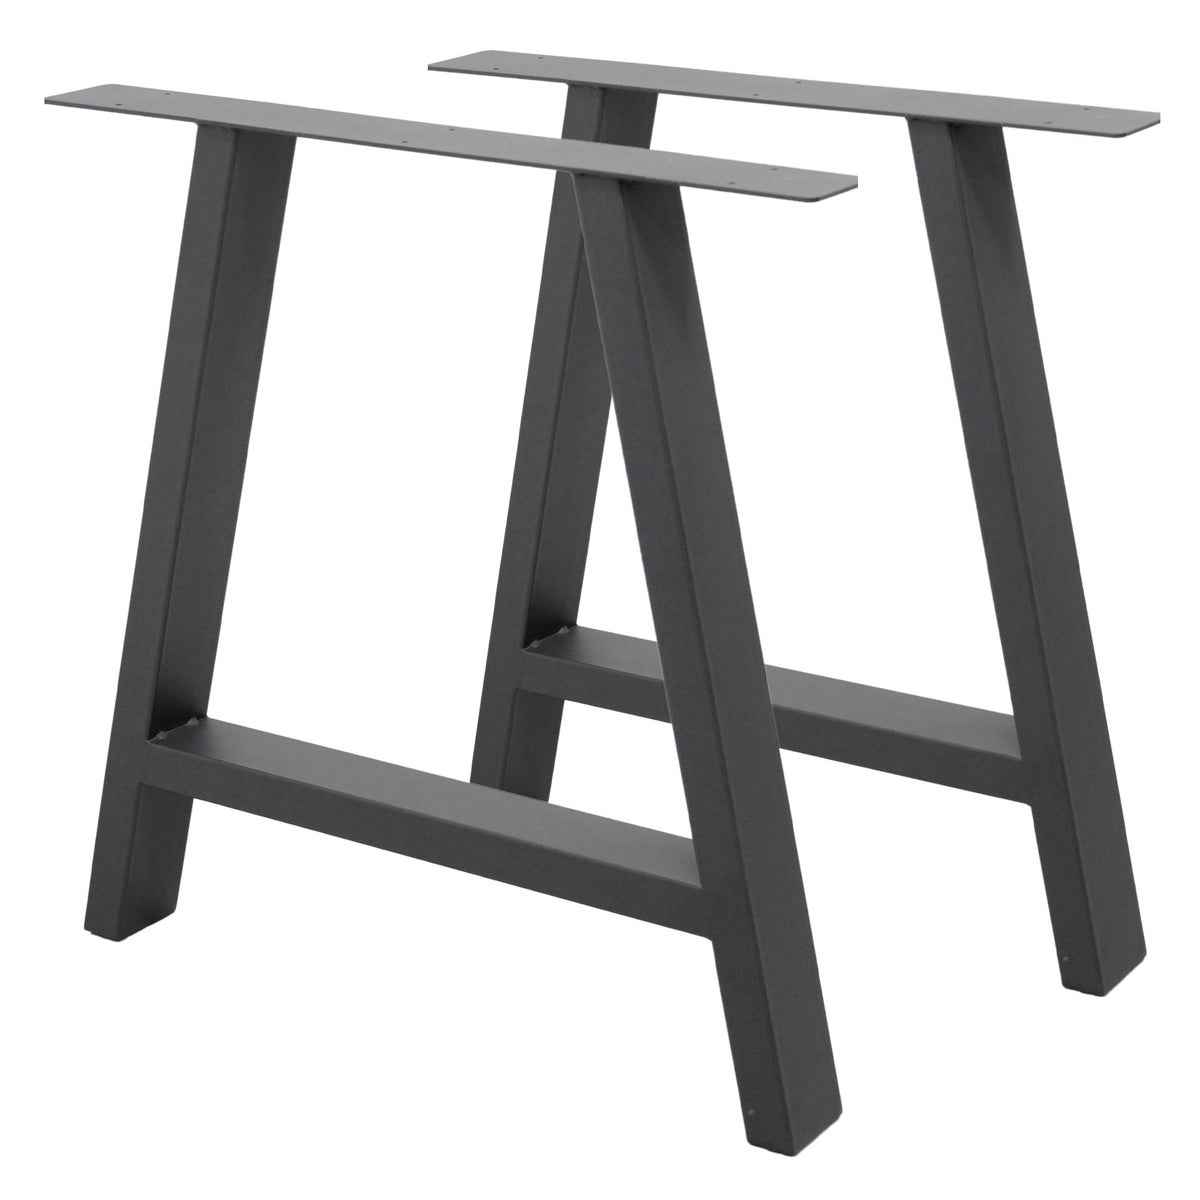 ECD Germany 2x Tischbeine A-Form A-Design, 70 x 72 cm, Anthrazit, aus pulverbeschichtetem Stahl, Industriedesign, Metall Tischkufen Tischuntergestell Tischgestell Möbelfüße, für Esstisch Schreibtisch